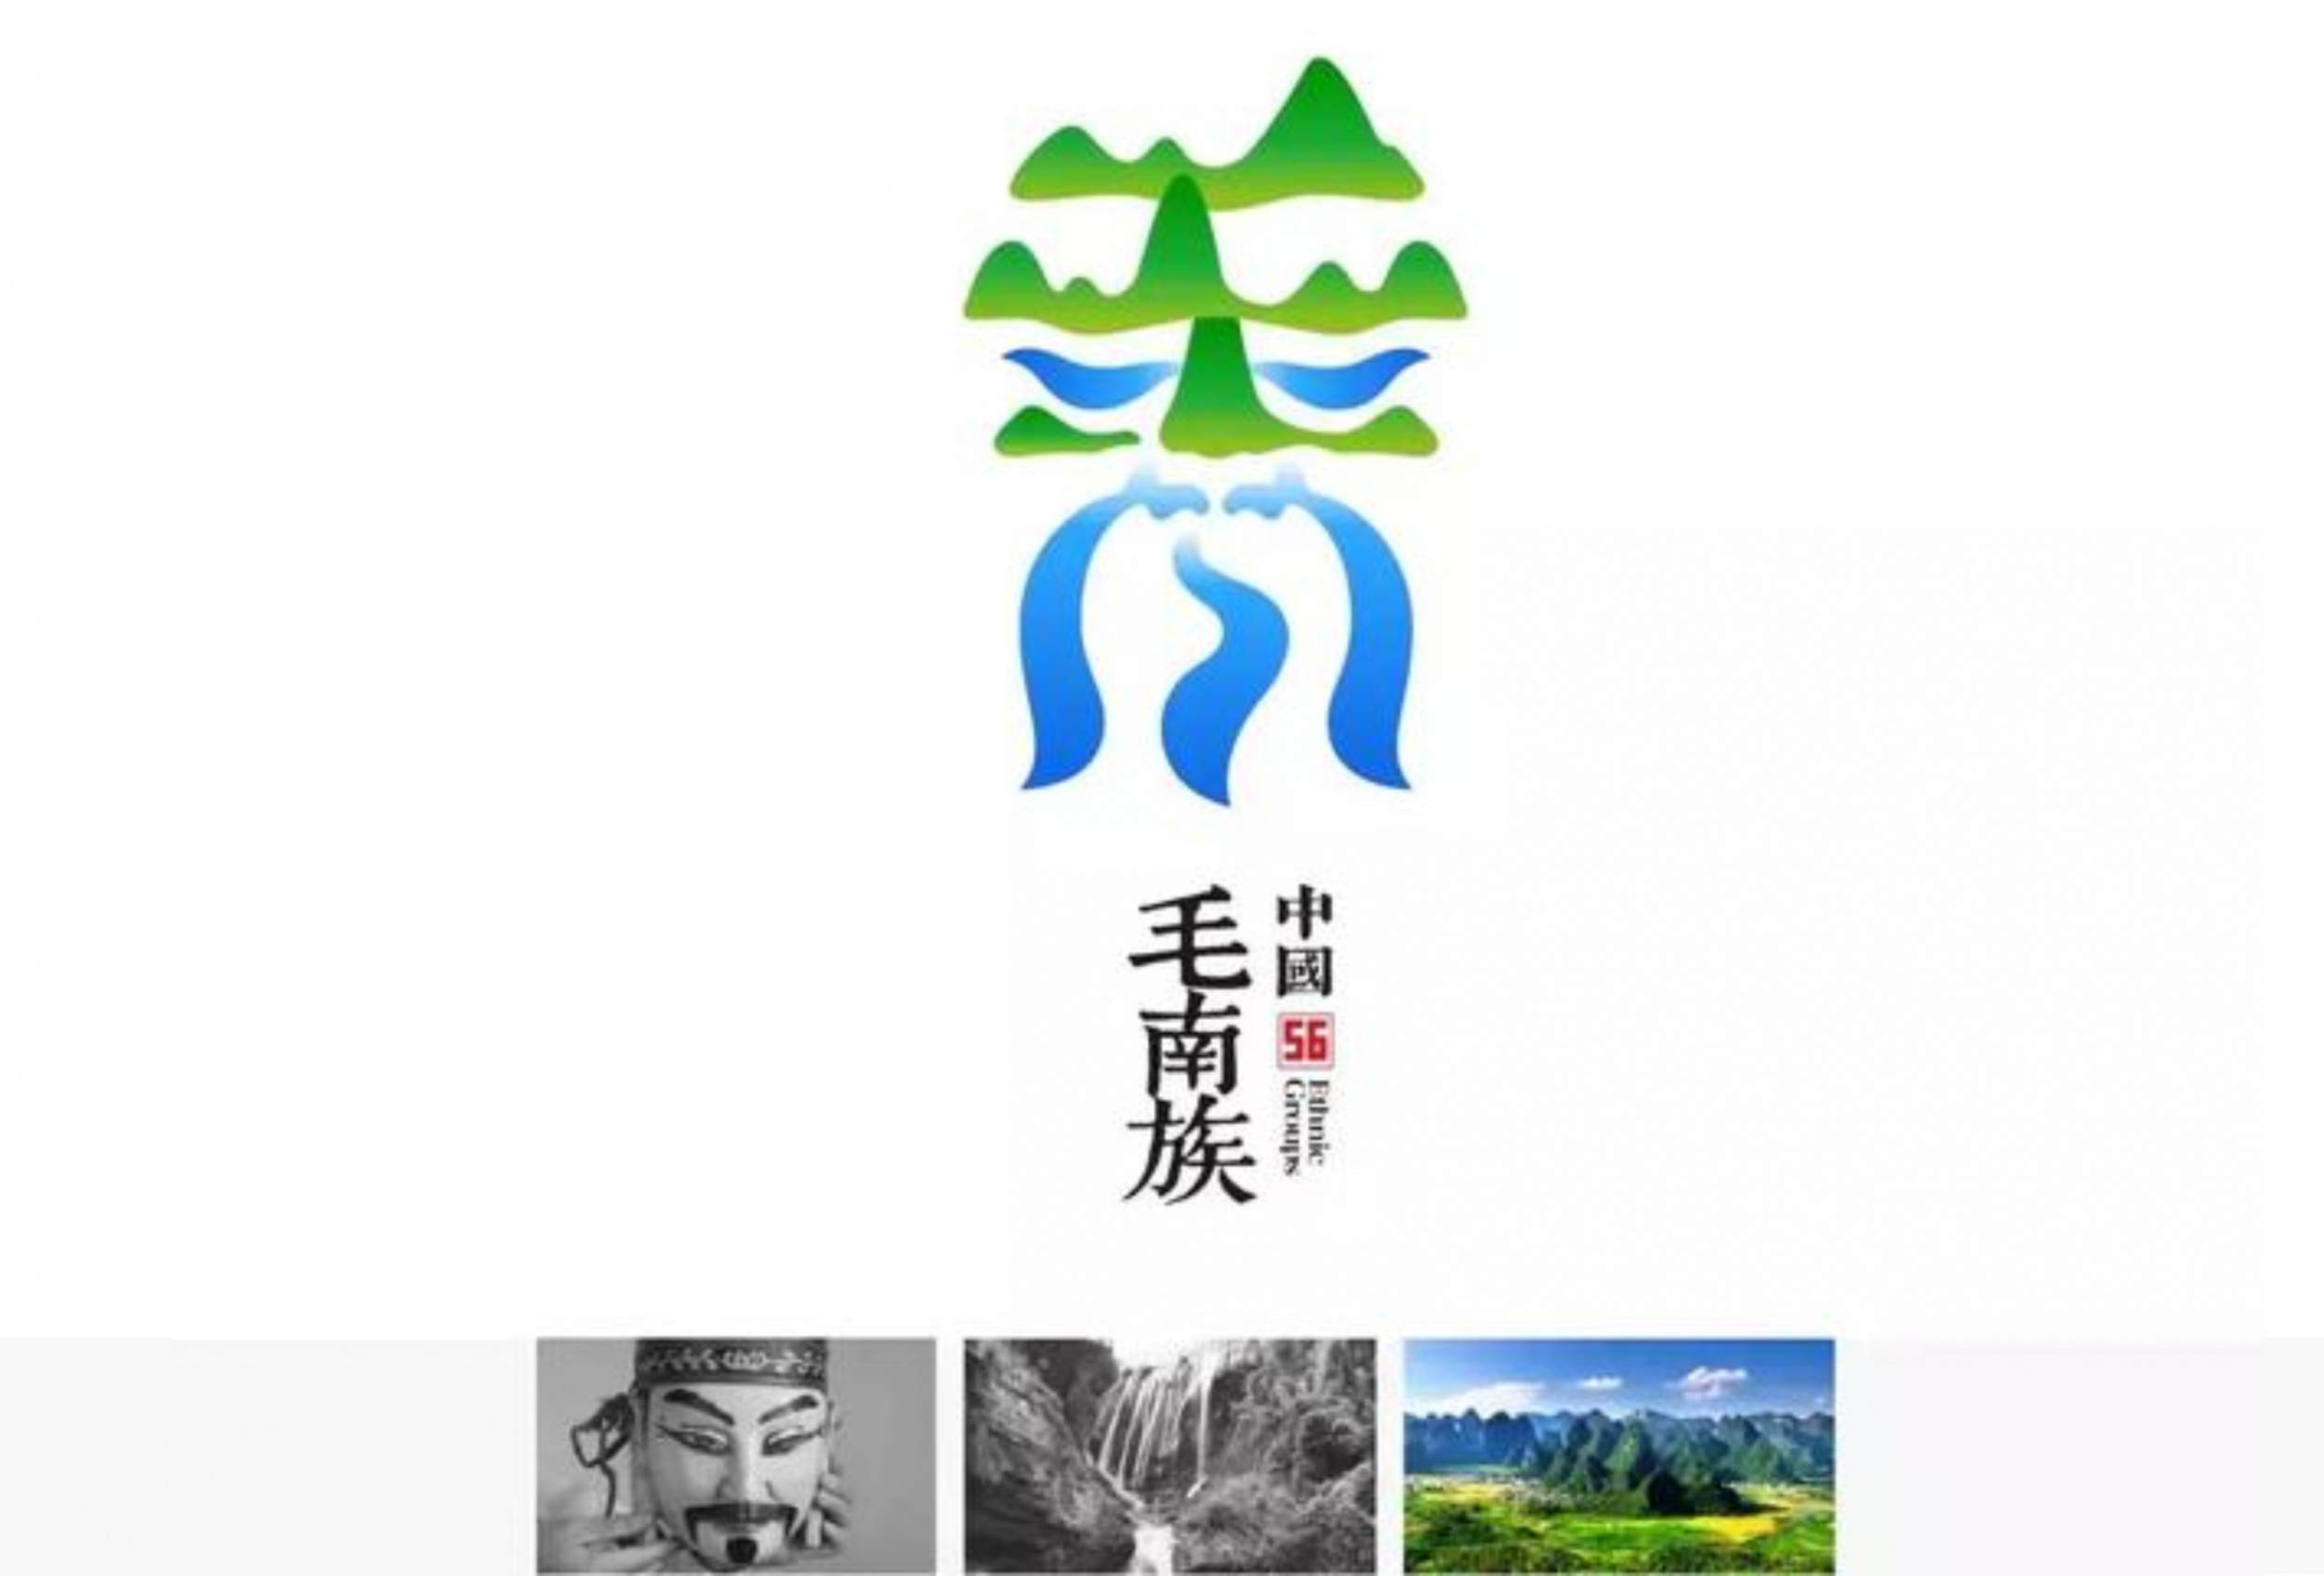 郑州56个民族标志创意设计 快来瞅一瞅吧!